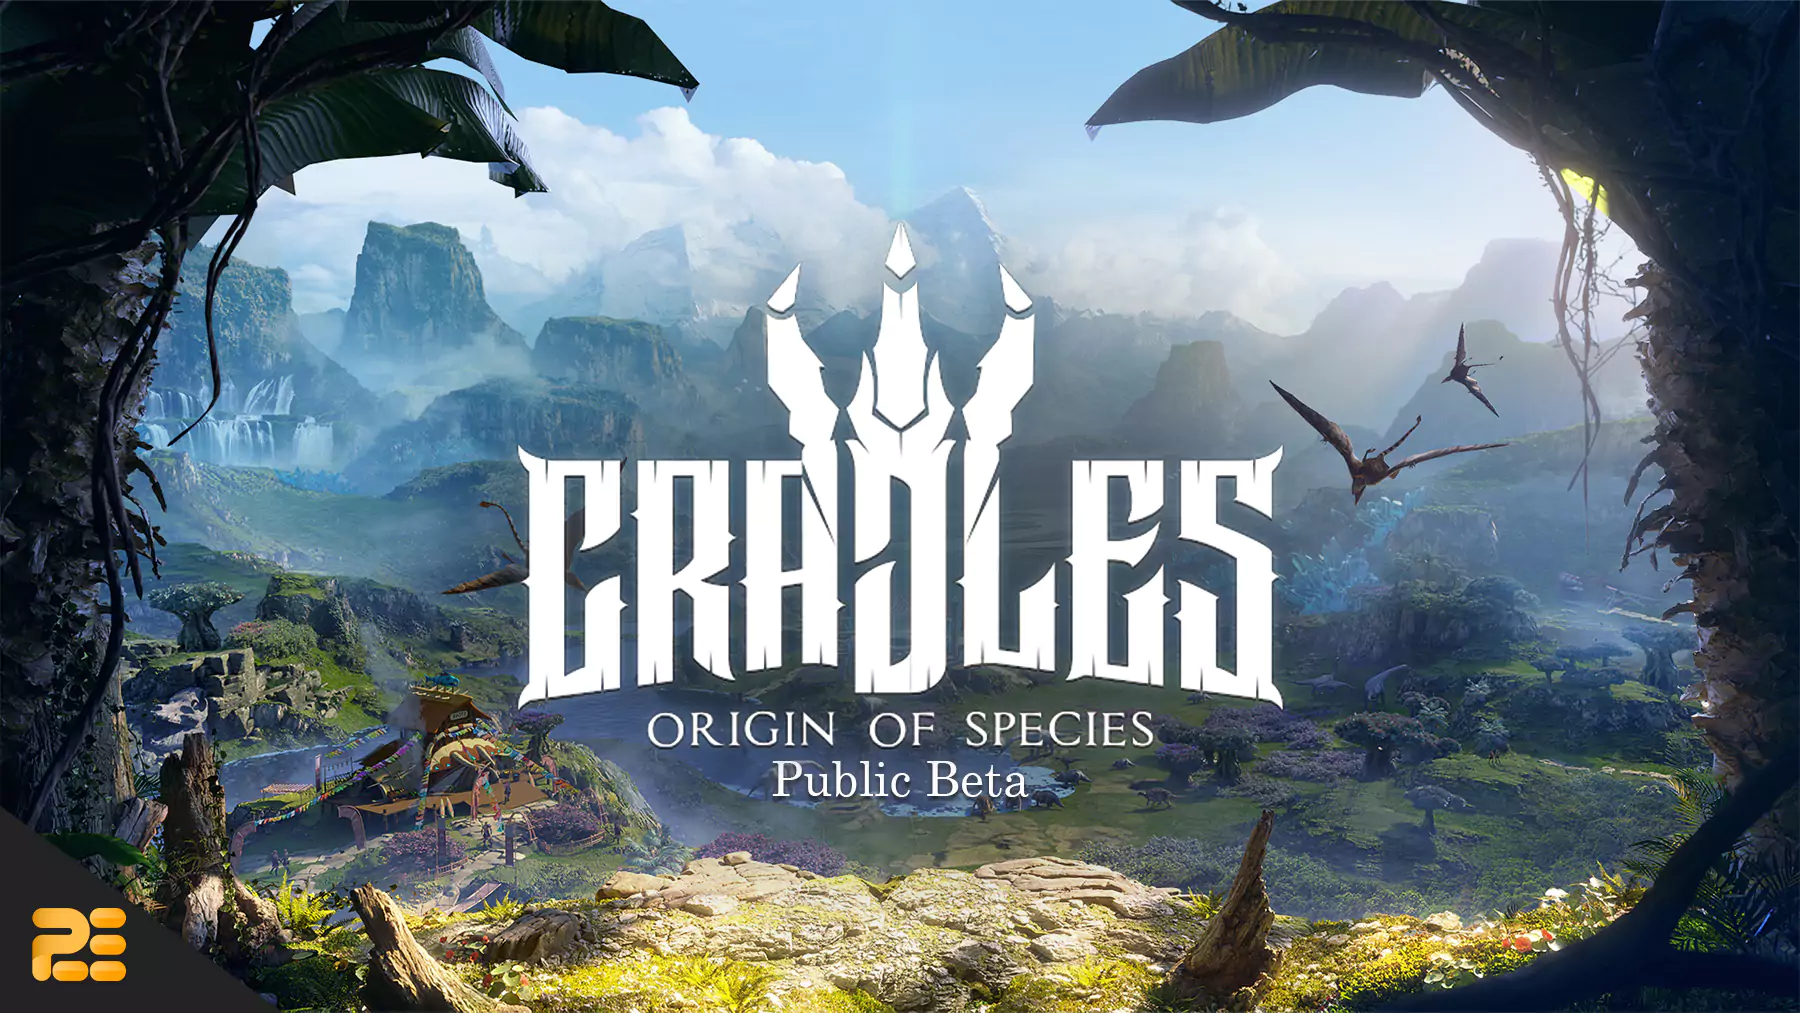 cradles-public-beta